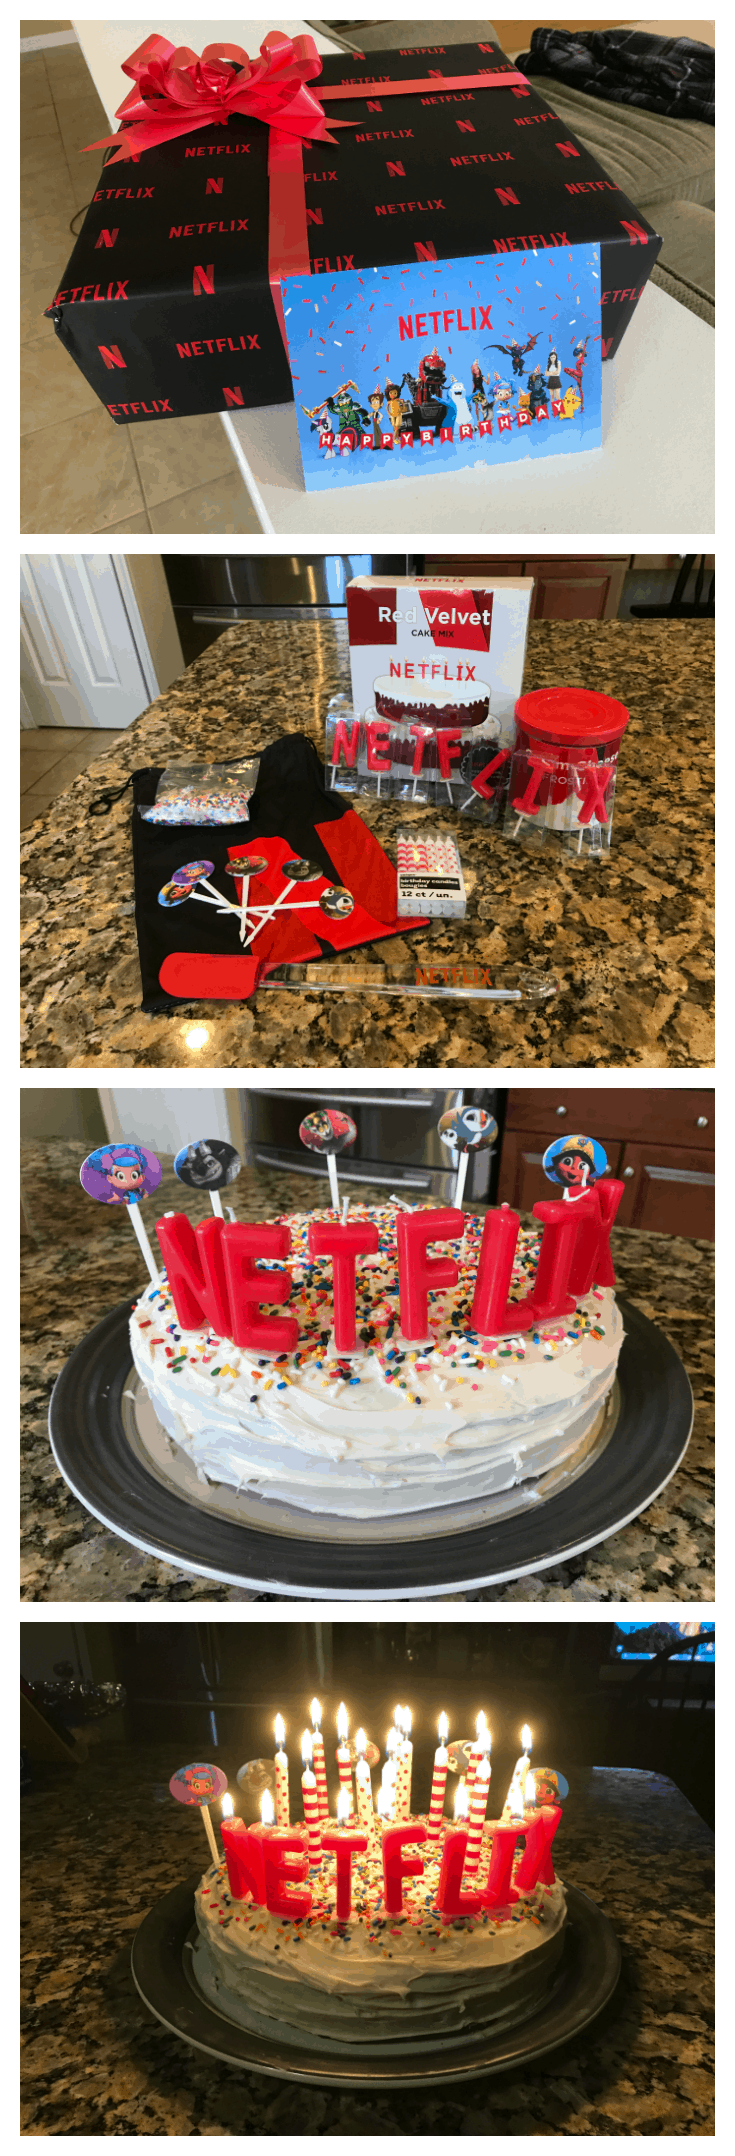 Celebrating a Netflix birthday